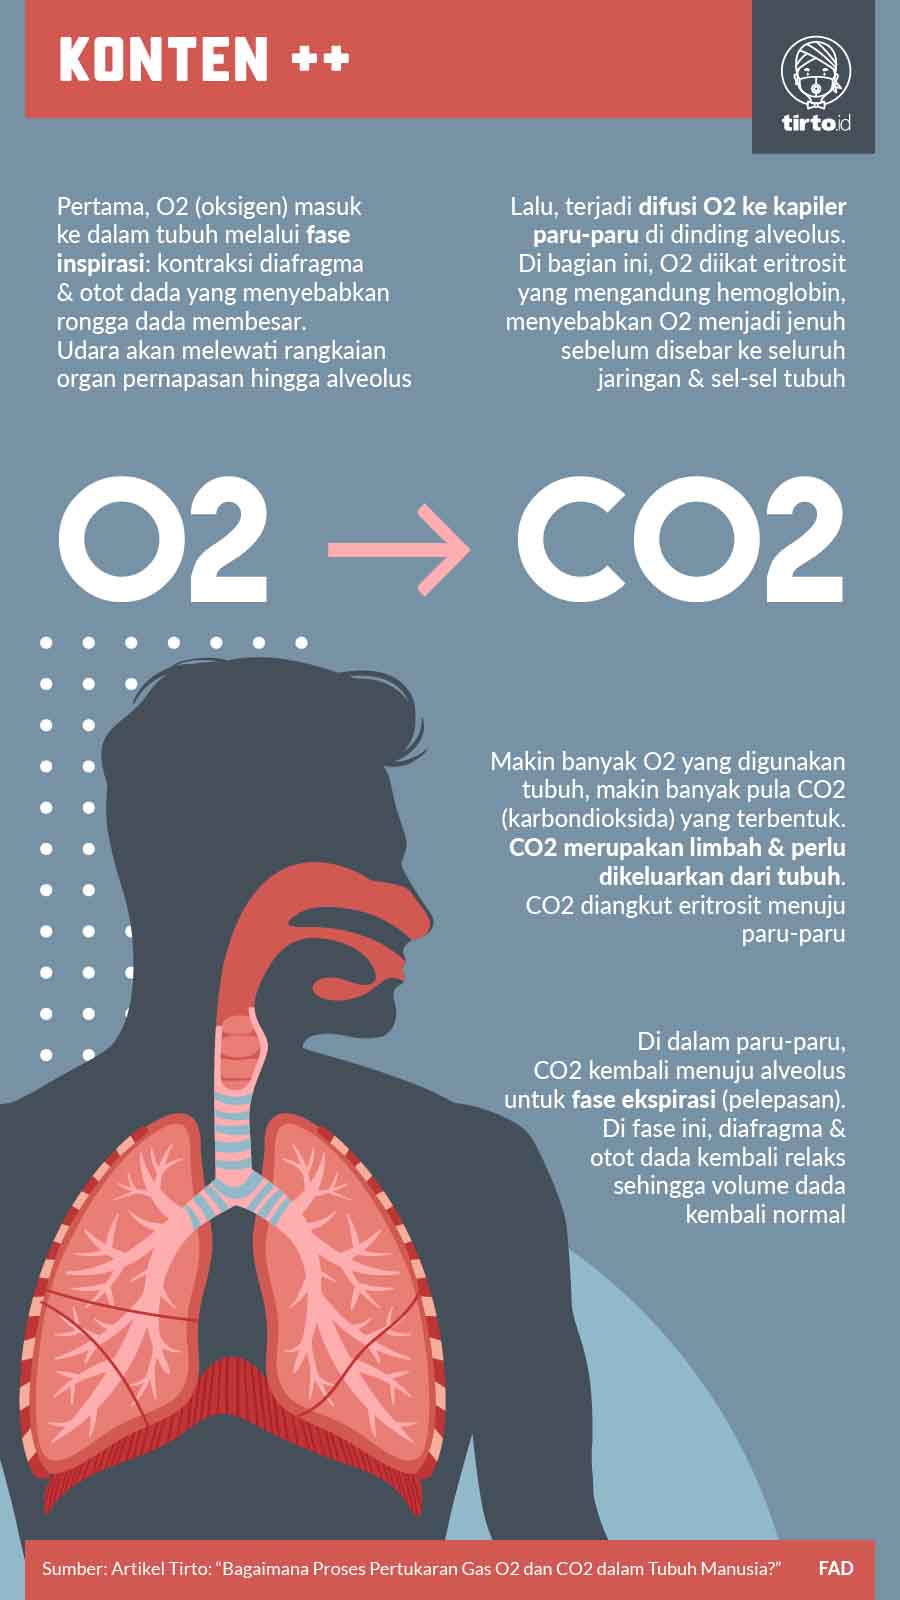 Tempat pertukaran oksigen dan karbondioksida dalam paru-paru terjadi di